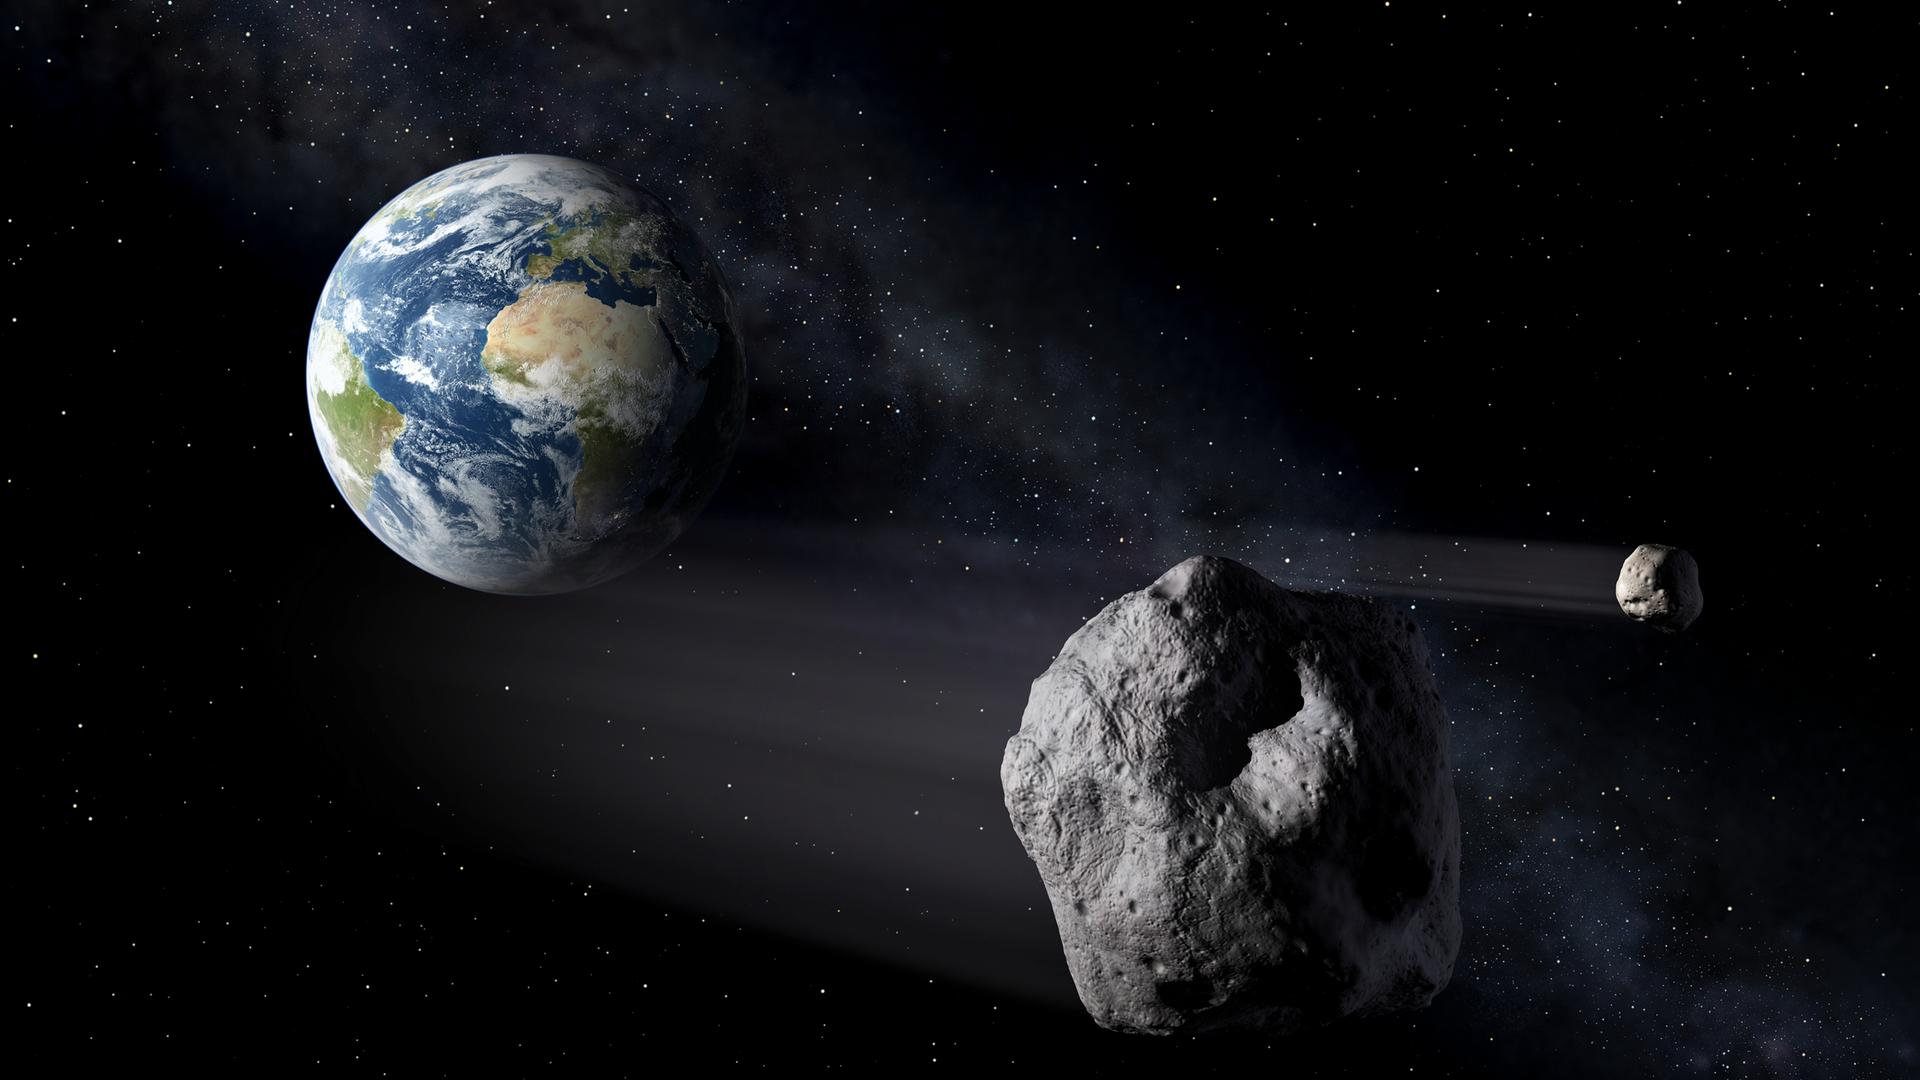 Himmelskörper - Asteroid 2023 DZ2 fliegt nahe an Erde vorbei